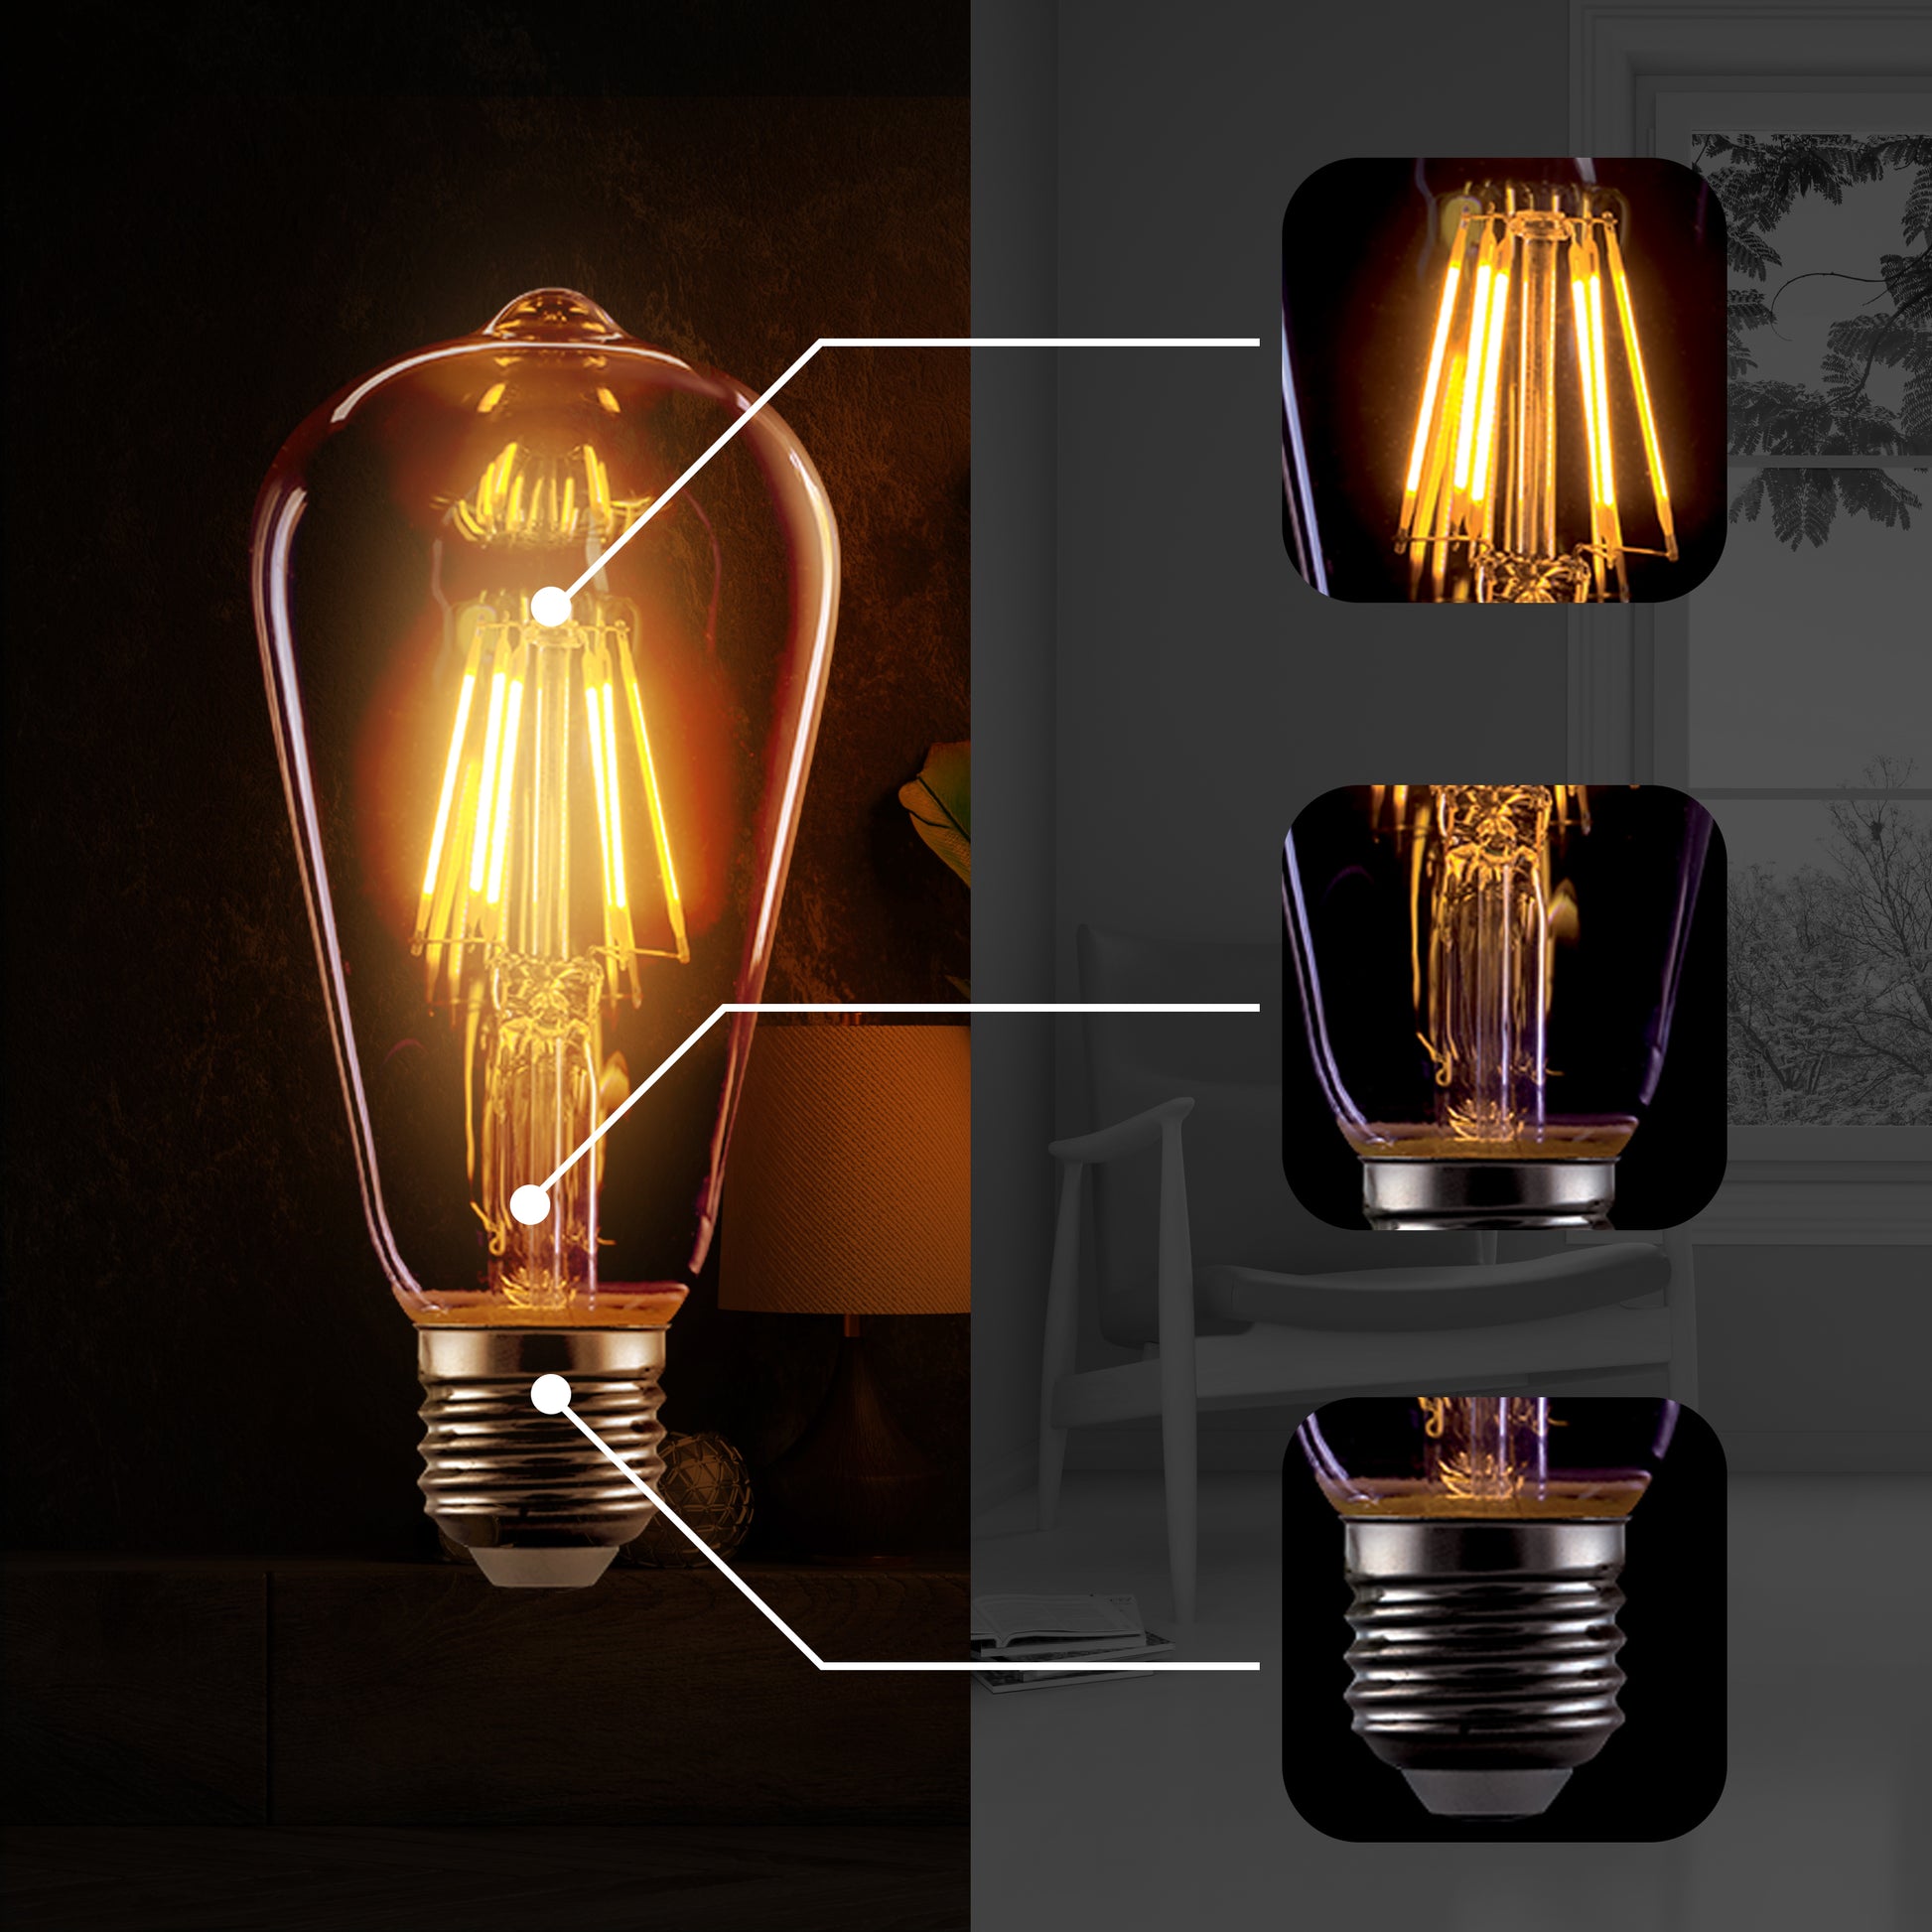 E27 ST64 Vintage LED dimmbare Glühbirnen, 8 W Edison-Glühbirne, 2700 K warmweiß, bernsteinfarbene, energiesparende dekorative Glühbirnen im Retro-Stil